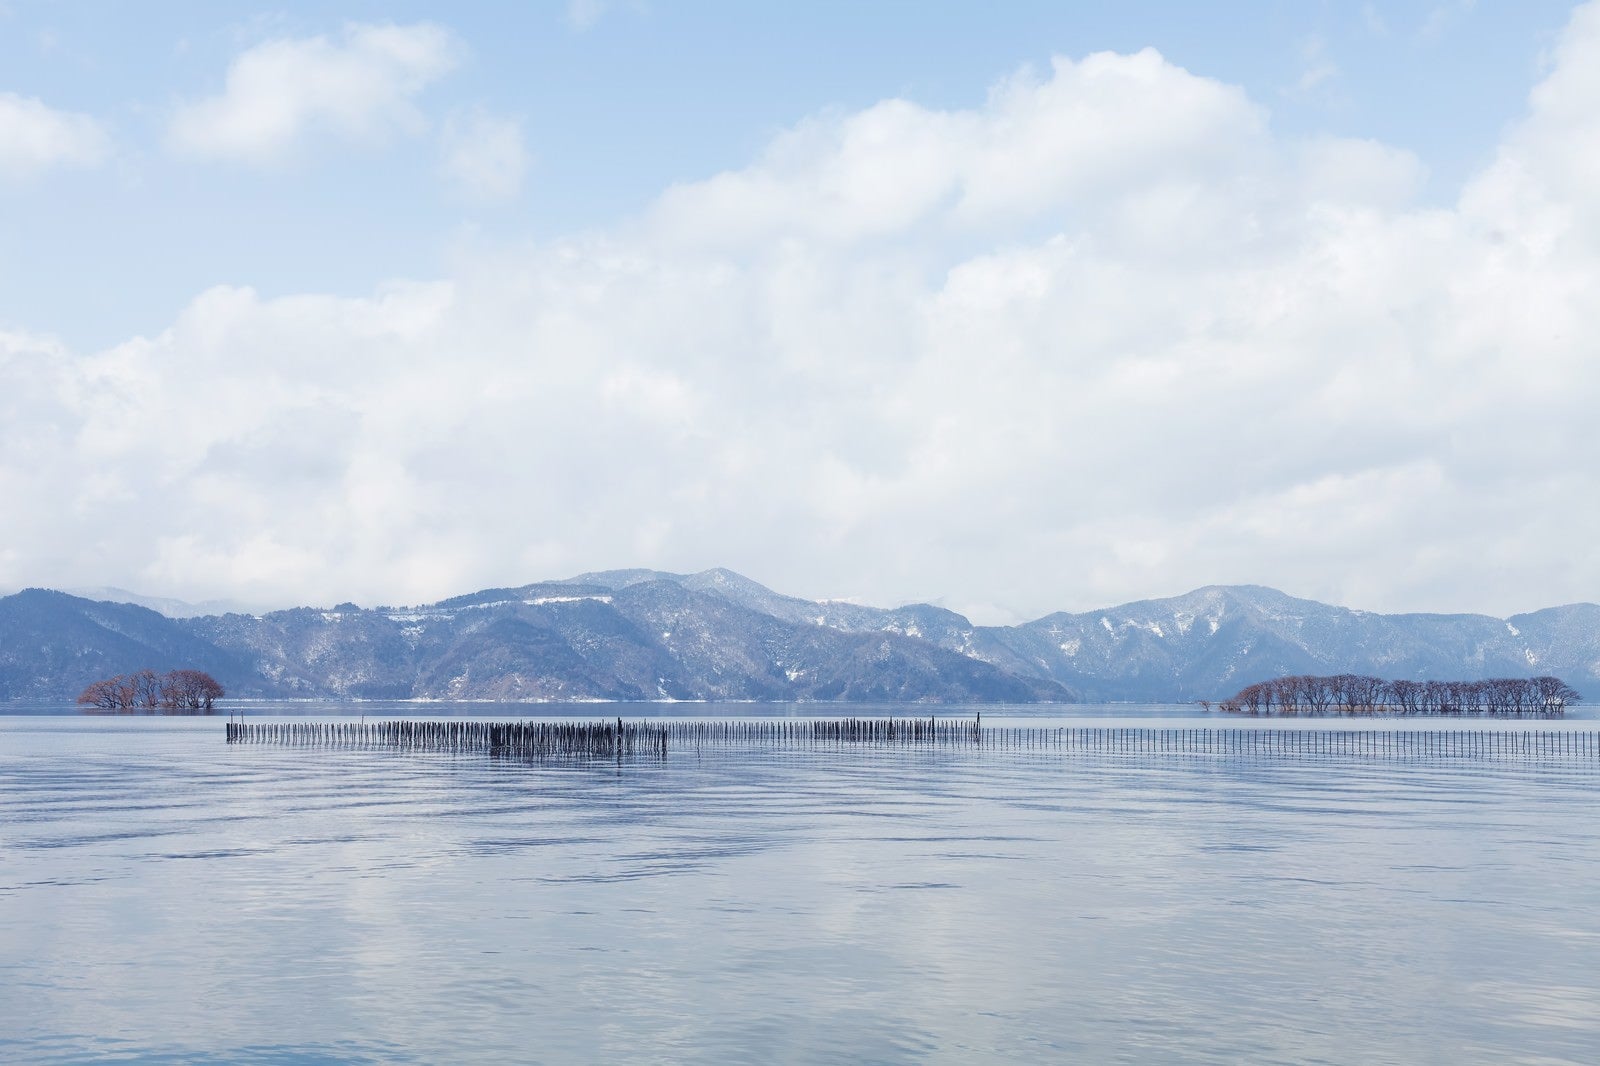 「湖北町から見た琵琶湖の景色」の写真